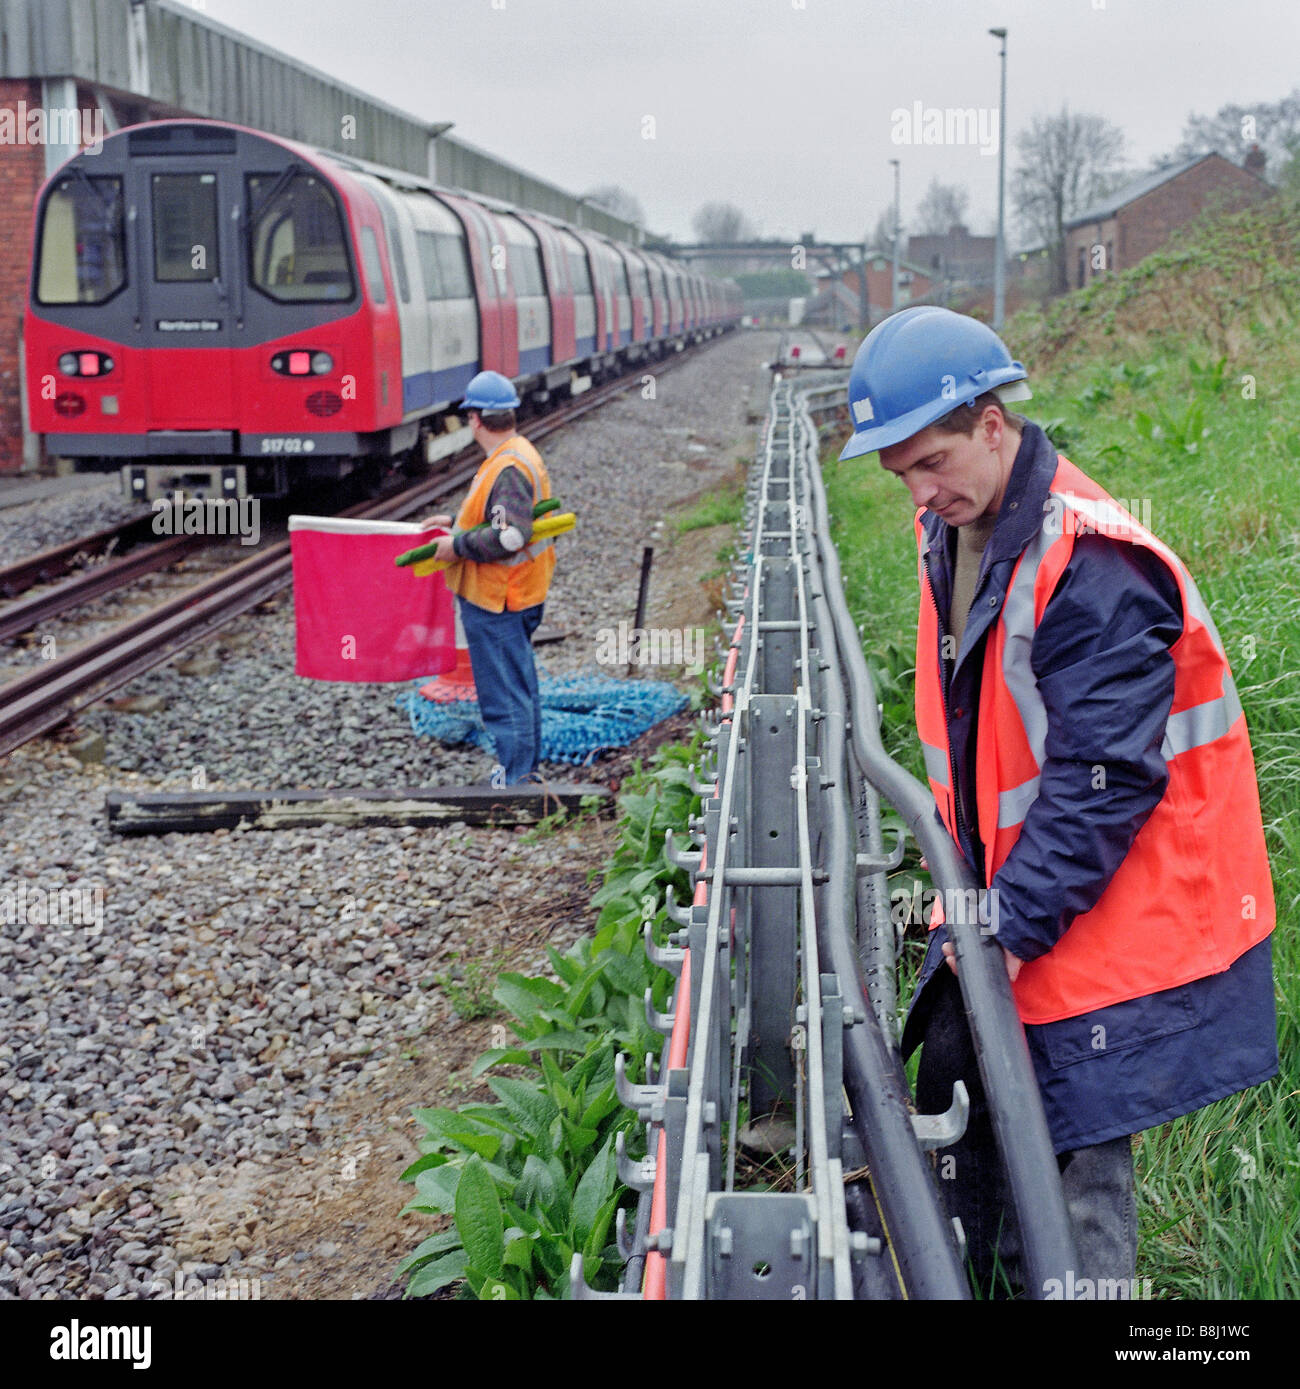 Ingegnere di sostituzione cavo di alimentazione mentre un look-out detiene una bandiera rossa per garantire la sua sicurezza controllando i movimenti del treno. Foto Stock